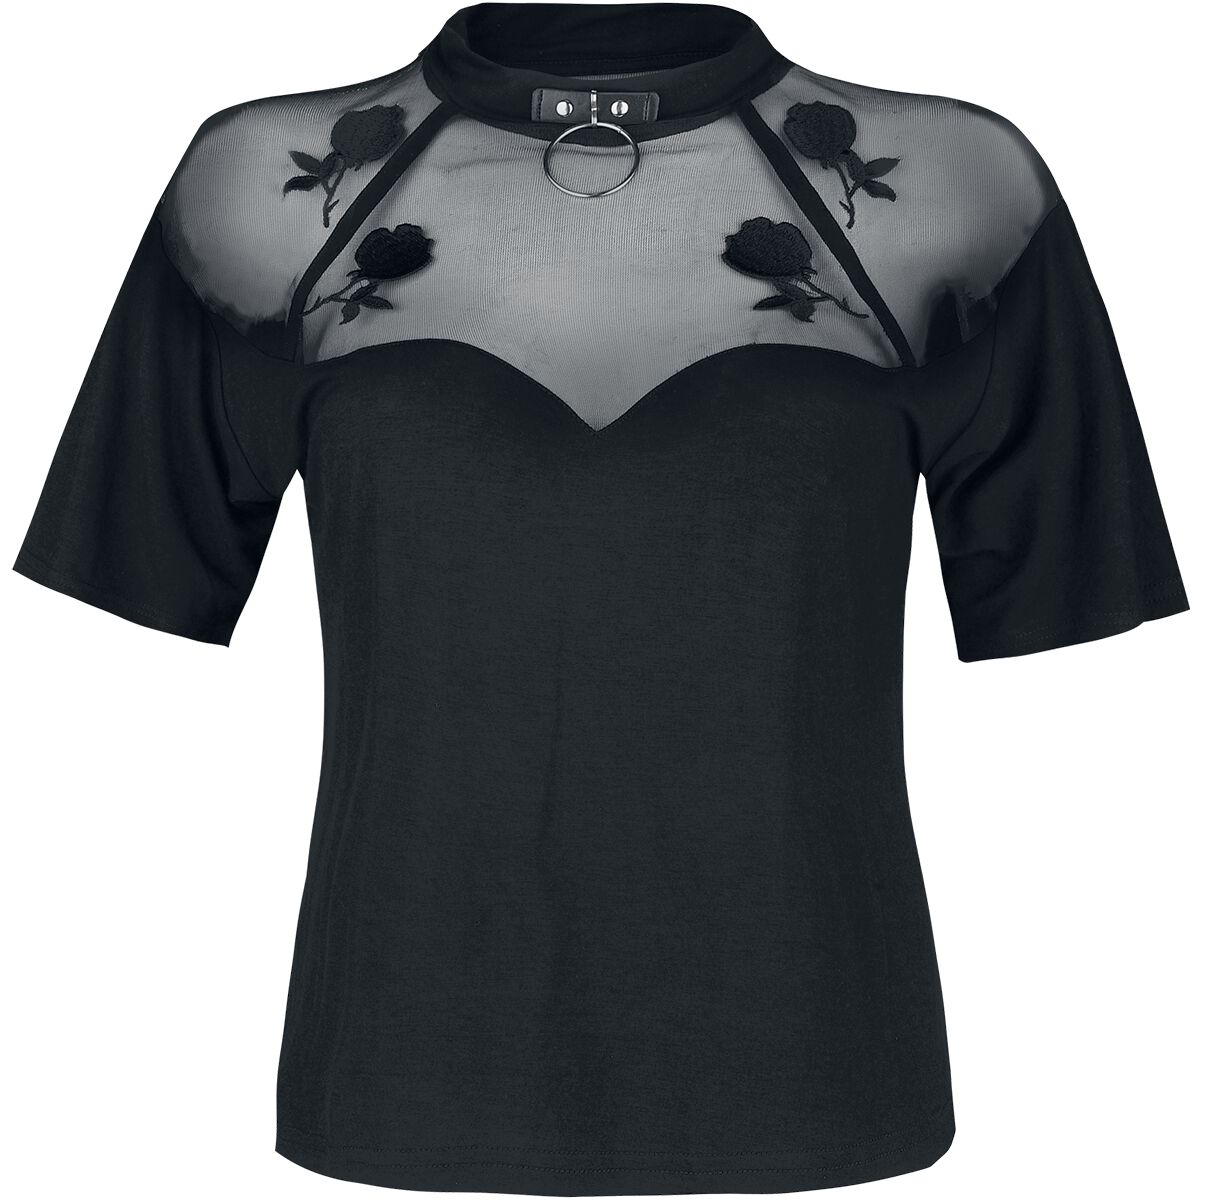 Jawbreaker T-Shirt - Rose Garden Mesh Top - S bis XXL - für Damen - Größe XL - schwarz